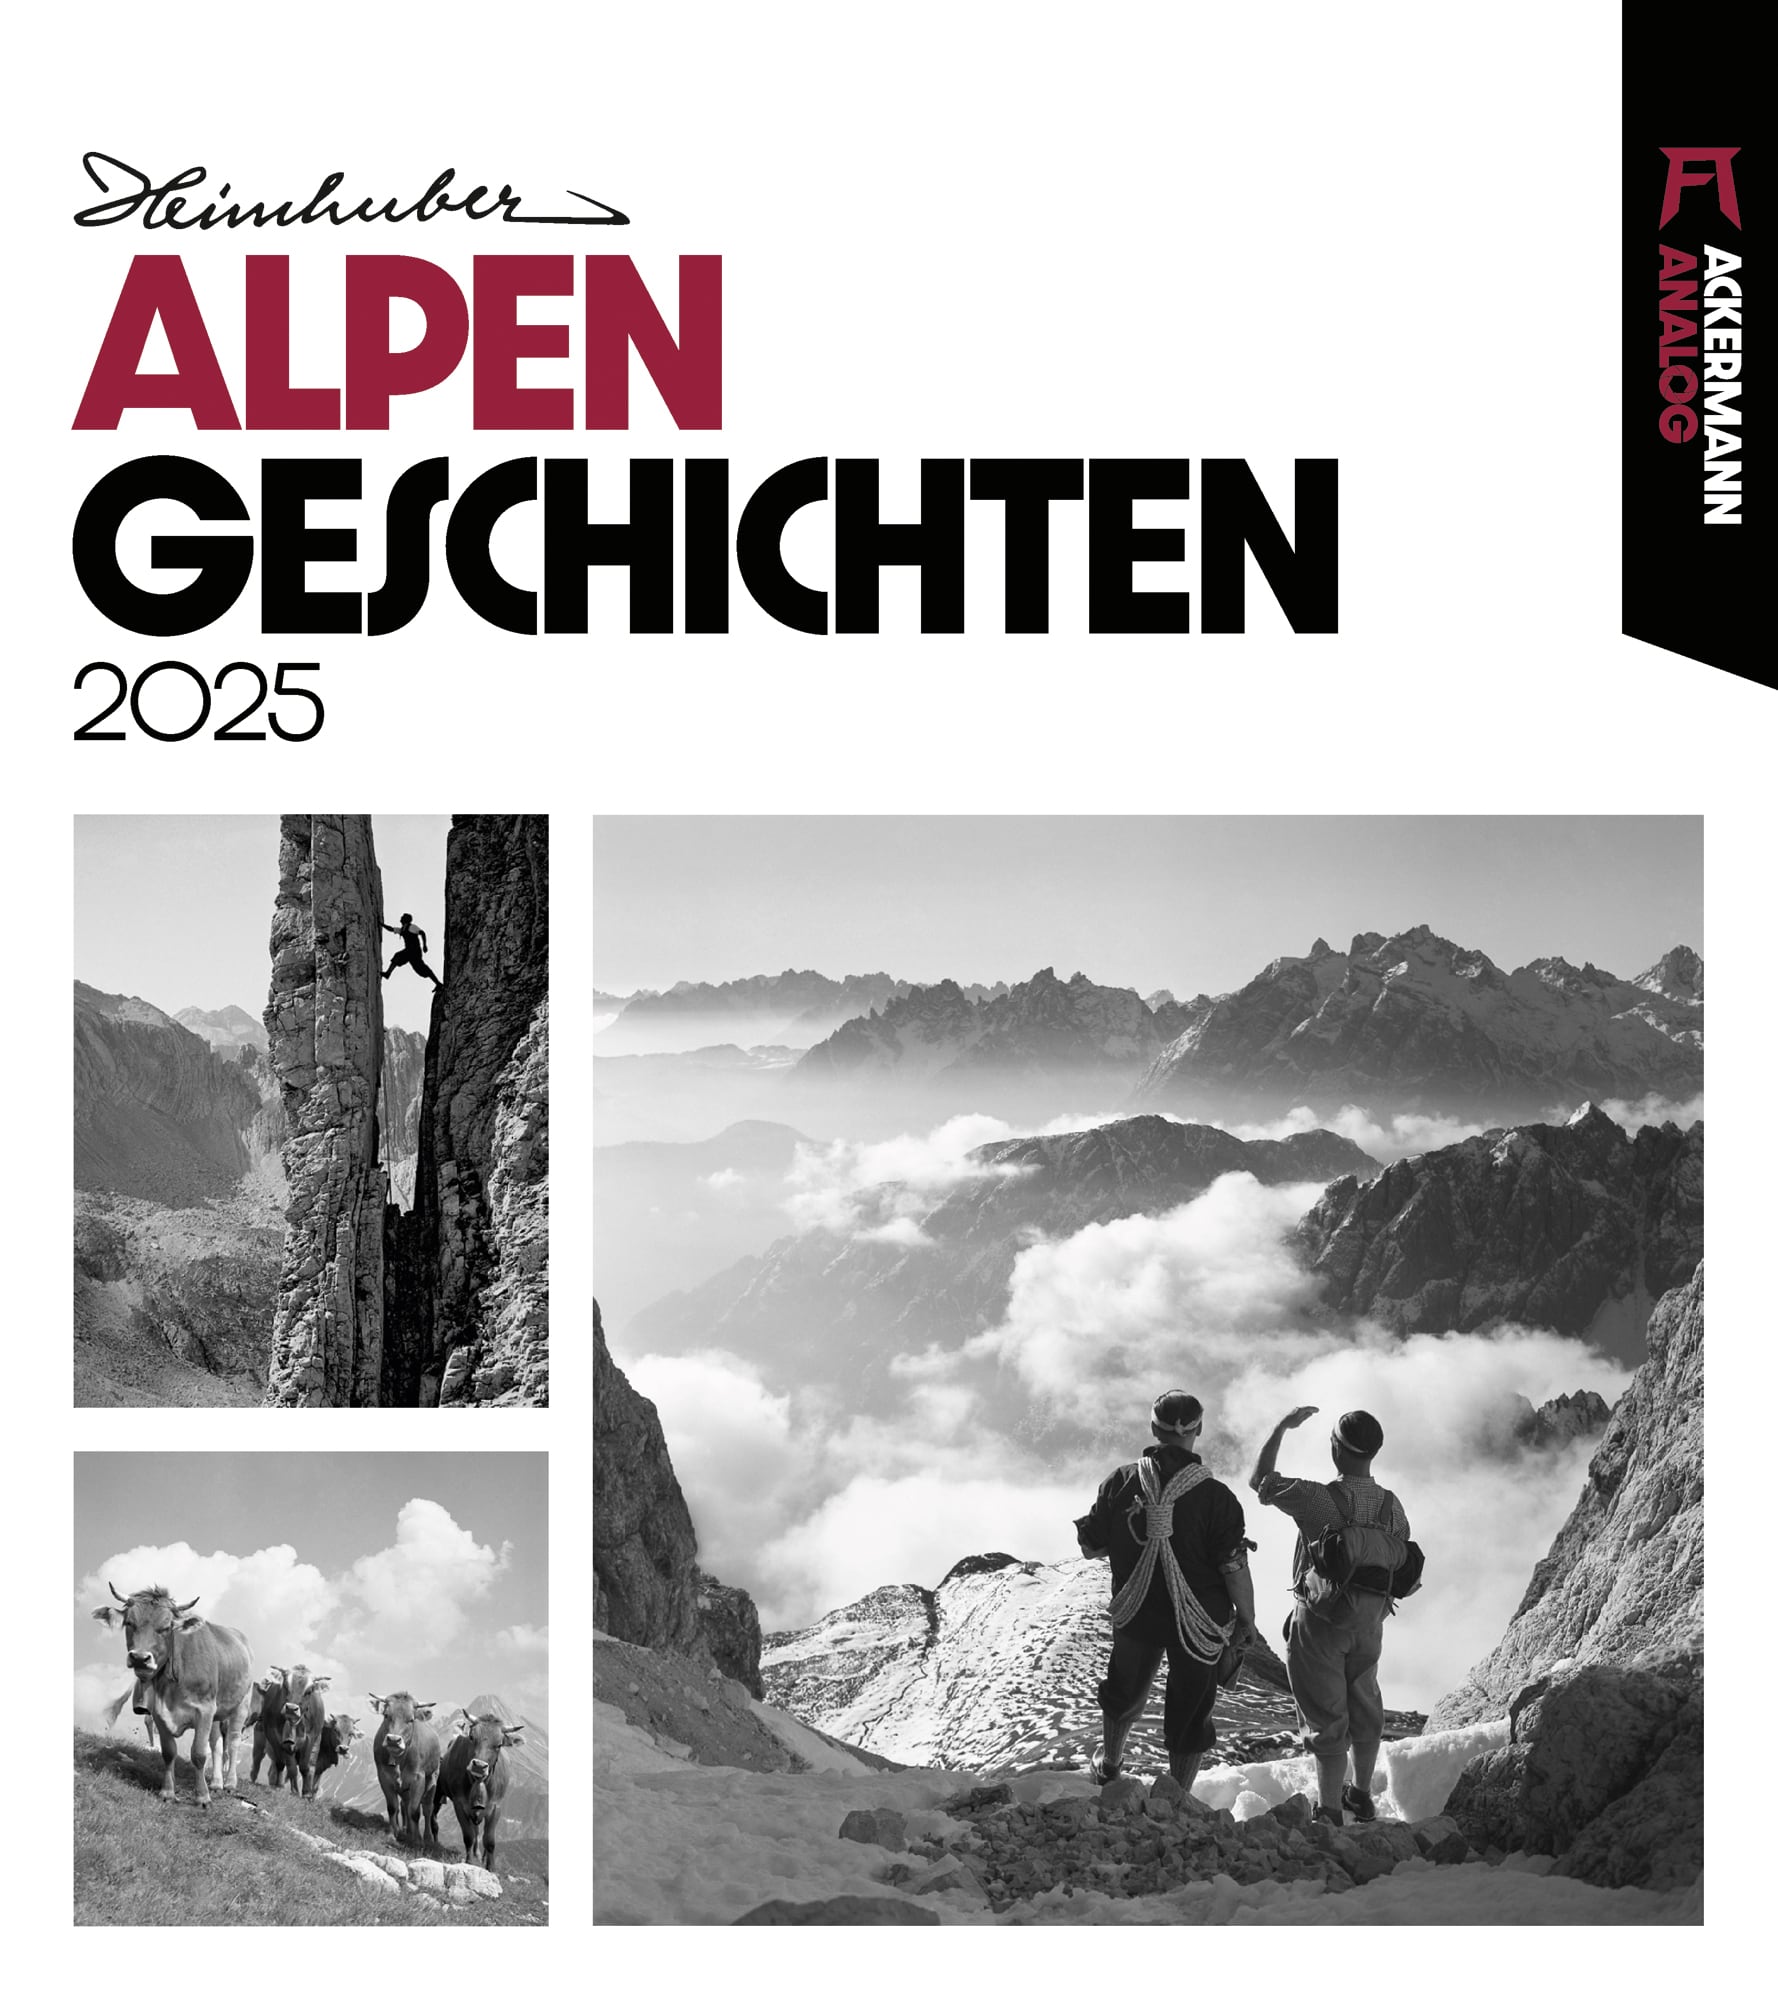 Ackermann Kalender Alpengeschichten 2025 - Titelblatt